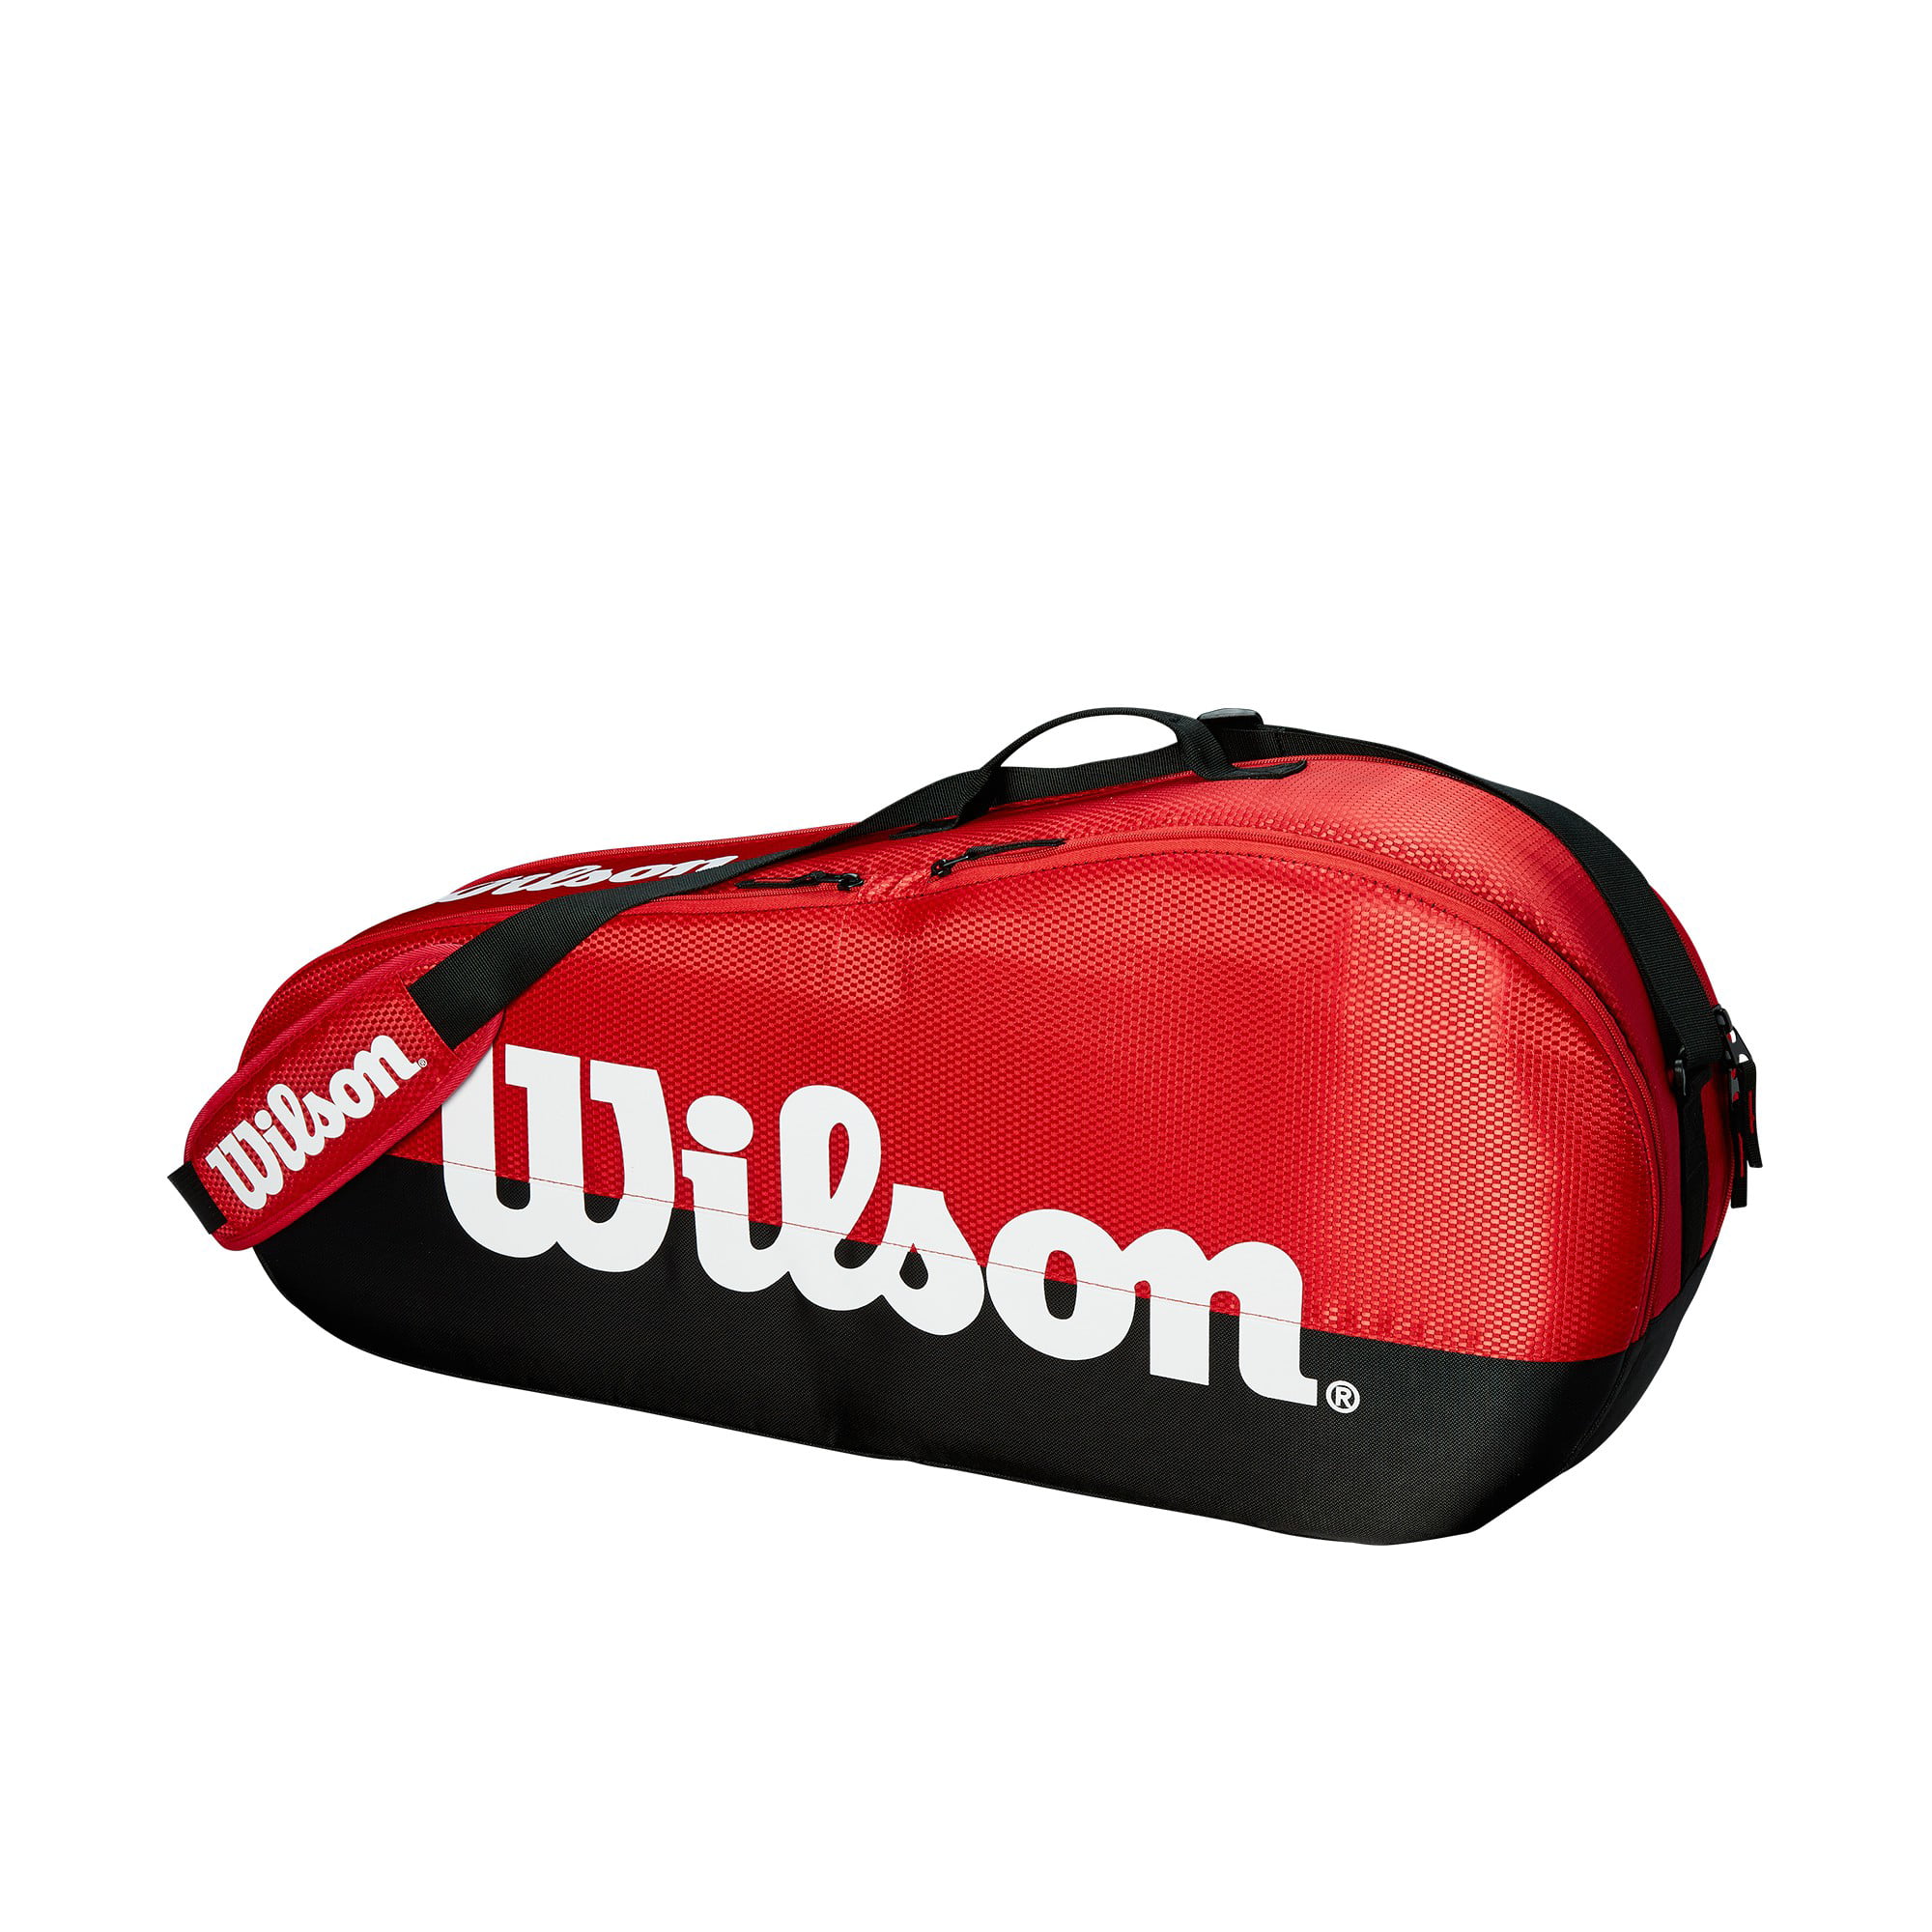 WILSON Team III 12 pack tennis racquet racket bag Reg $90 Red Auth Dealer 